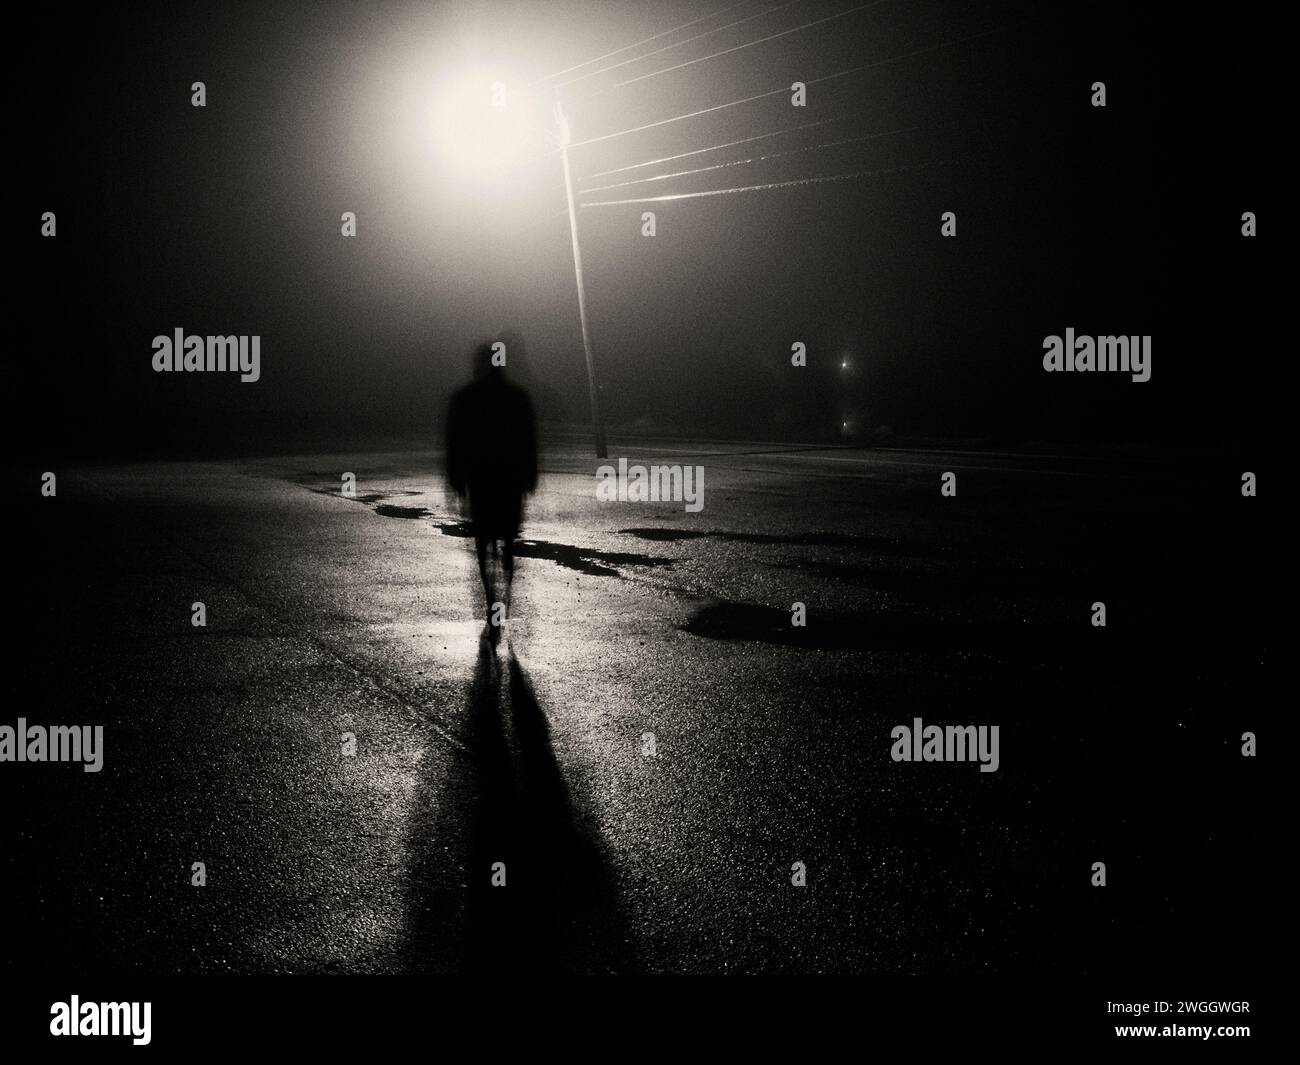 Un personnage ombragé marche à travers un parking trempé de pluie sous un lampadaire la nuit. Banque D'Images